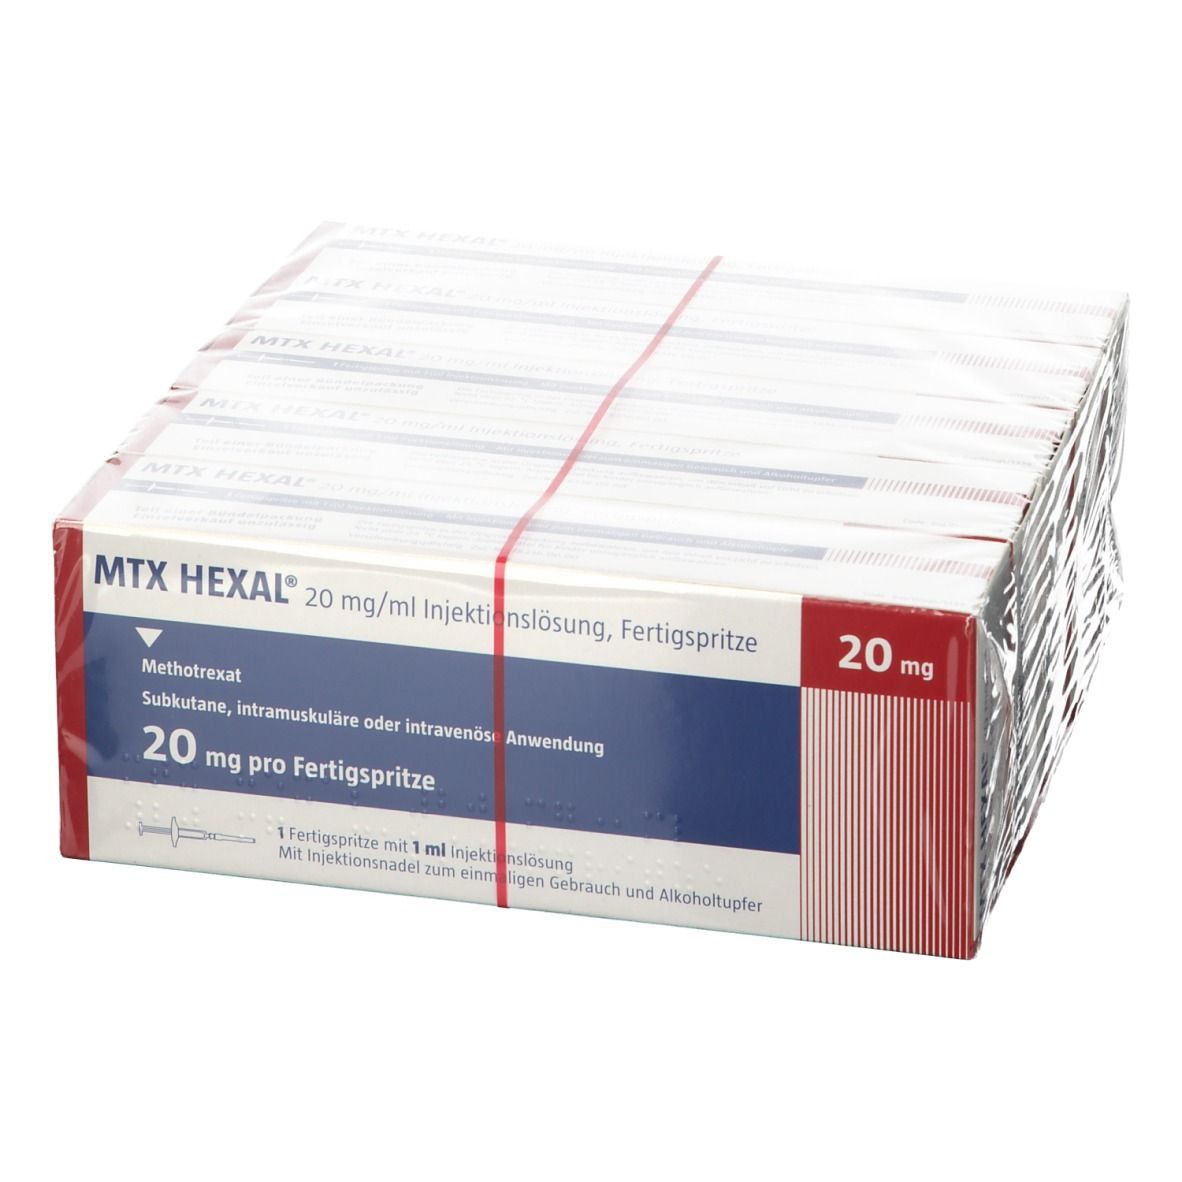 MTX HEXAL® 20 mg/ml